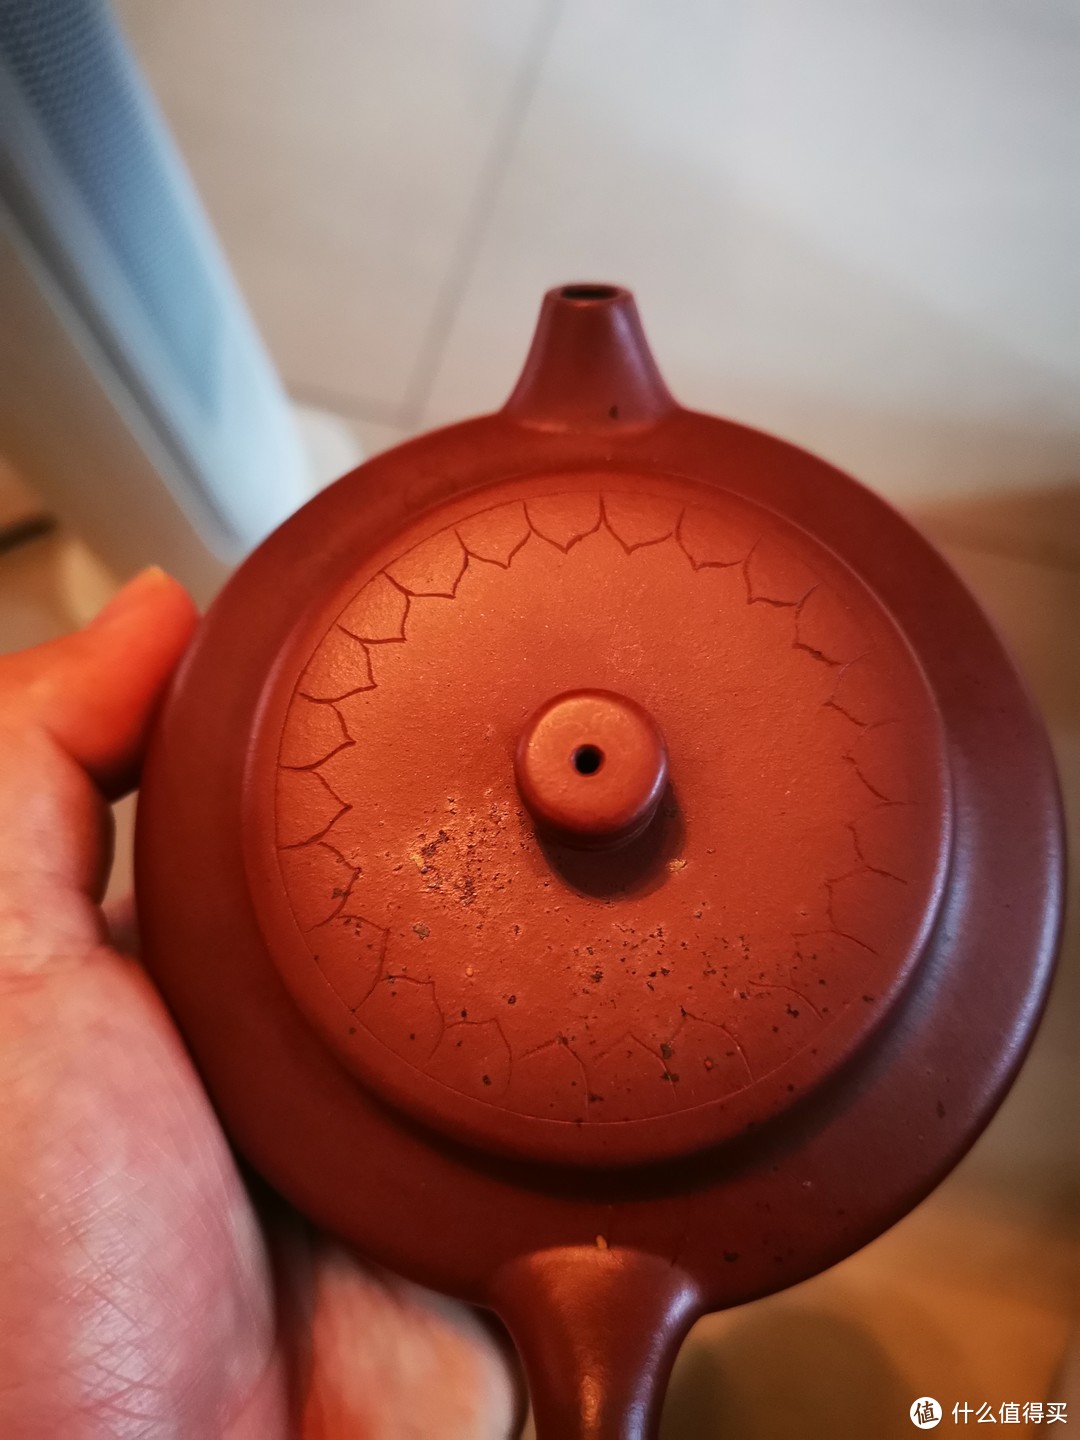 整理房间翻出一个紫砂壶，壶盖落渣不能泡茶了吗？